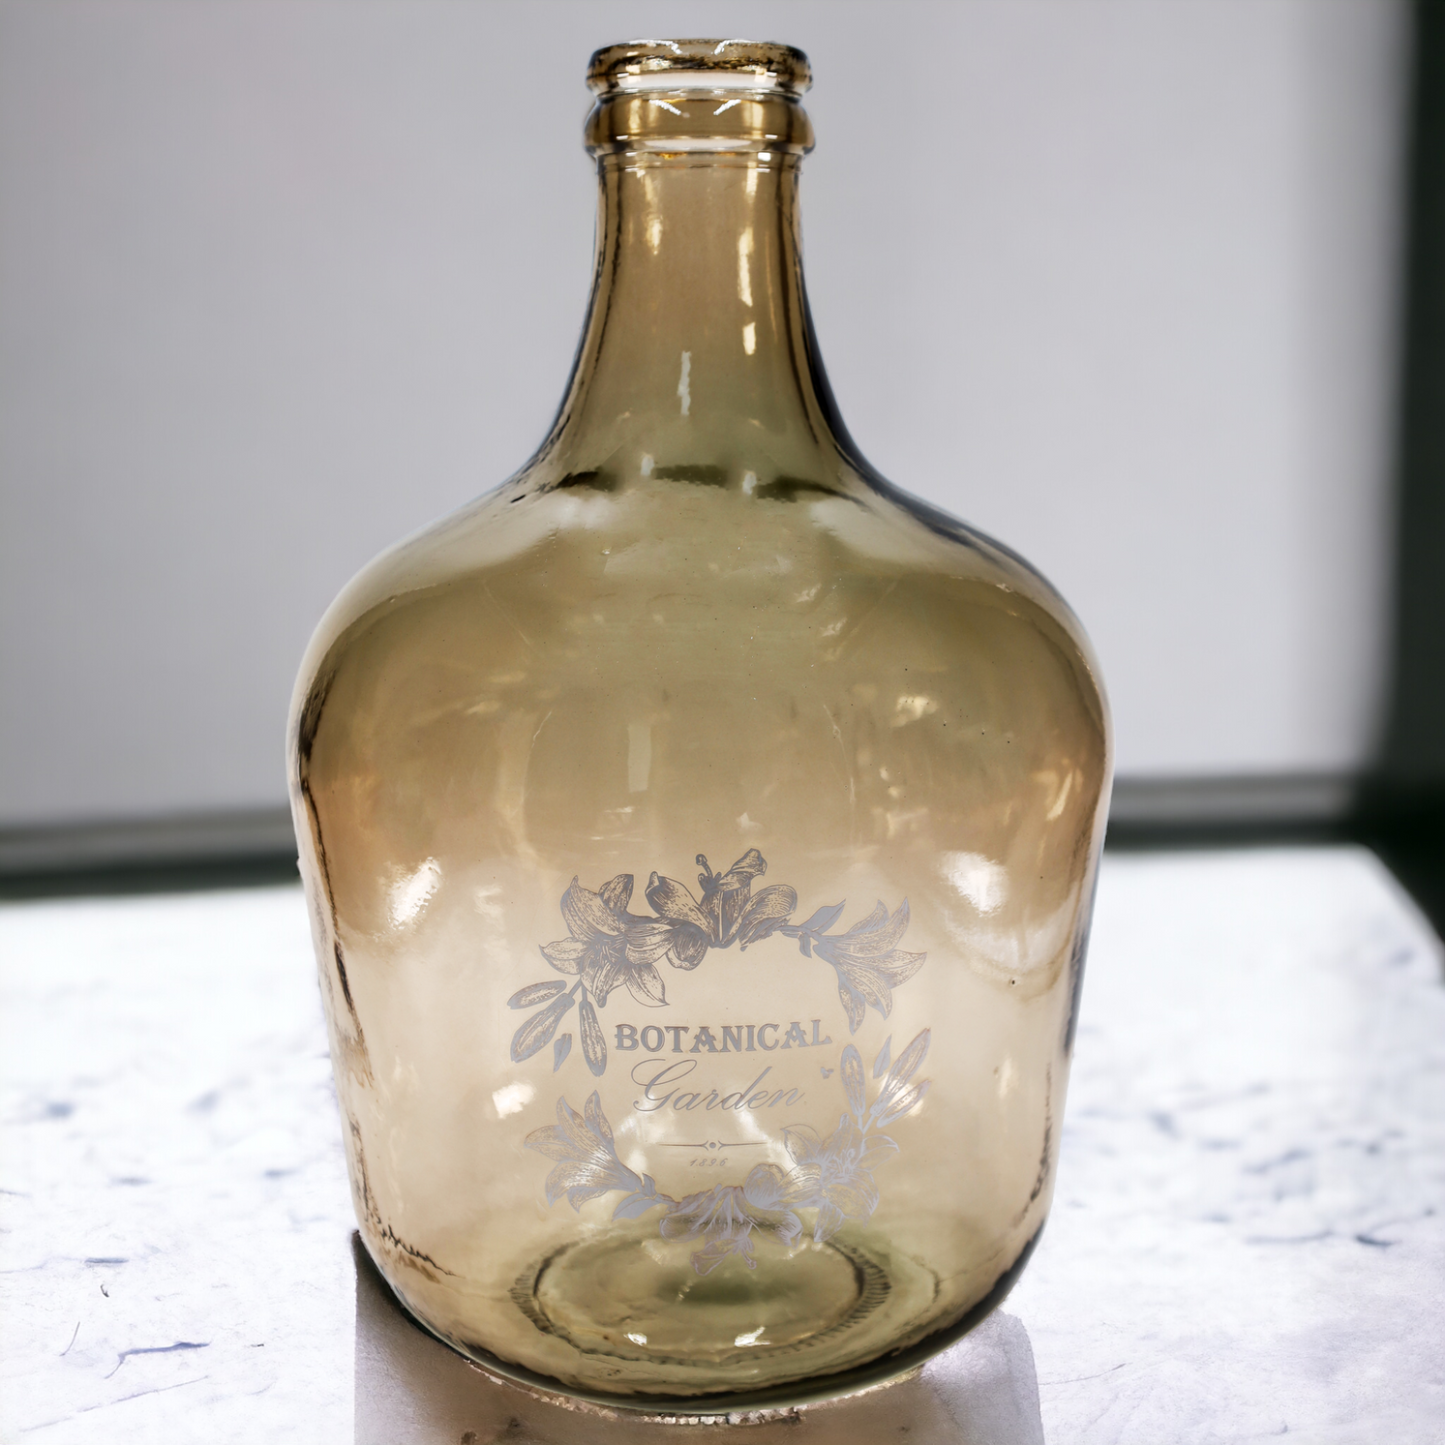 Vase - Flaschenkaraffe "Botanical" 12 l antik mit Aufdruck - 42 cm